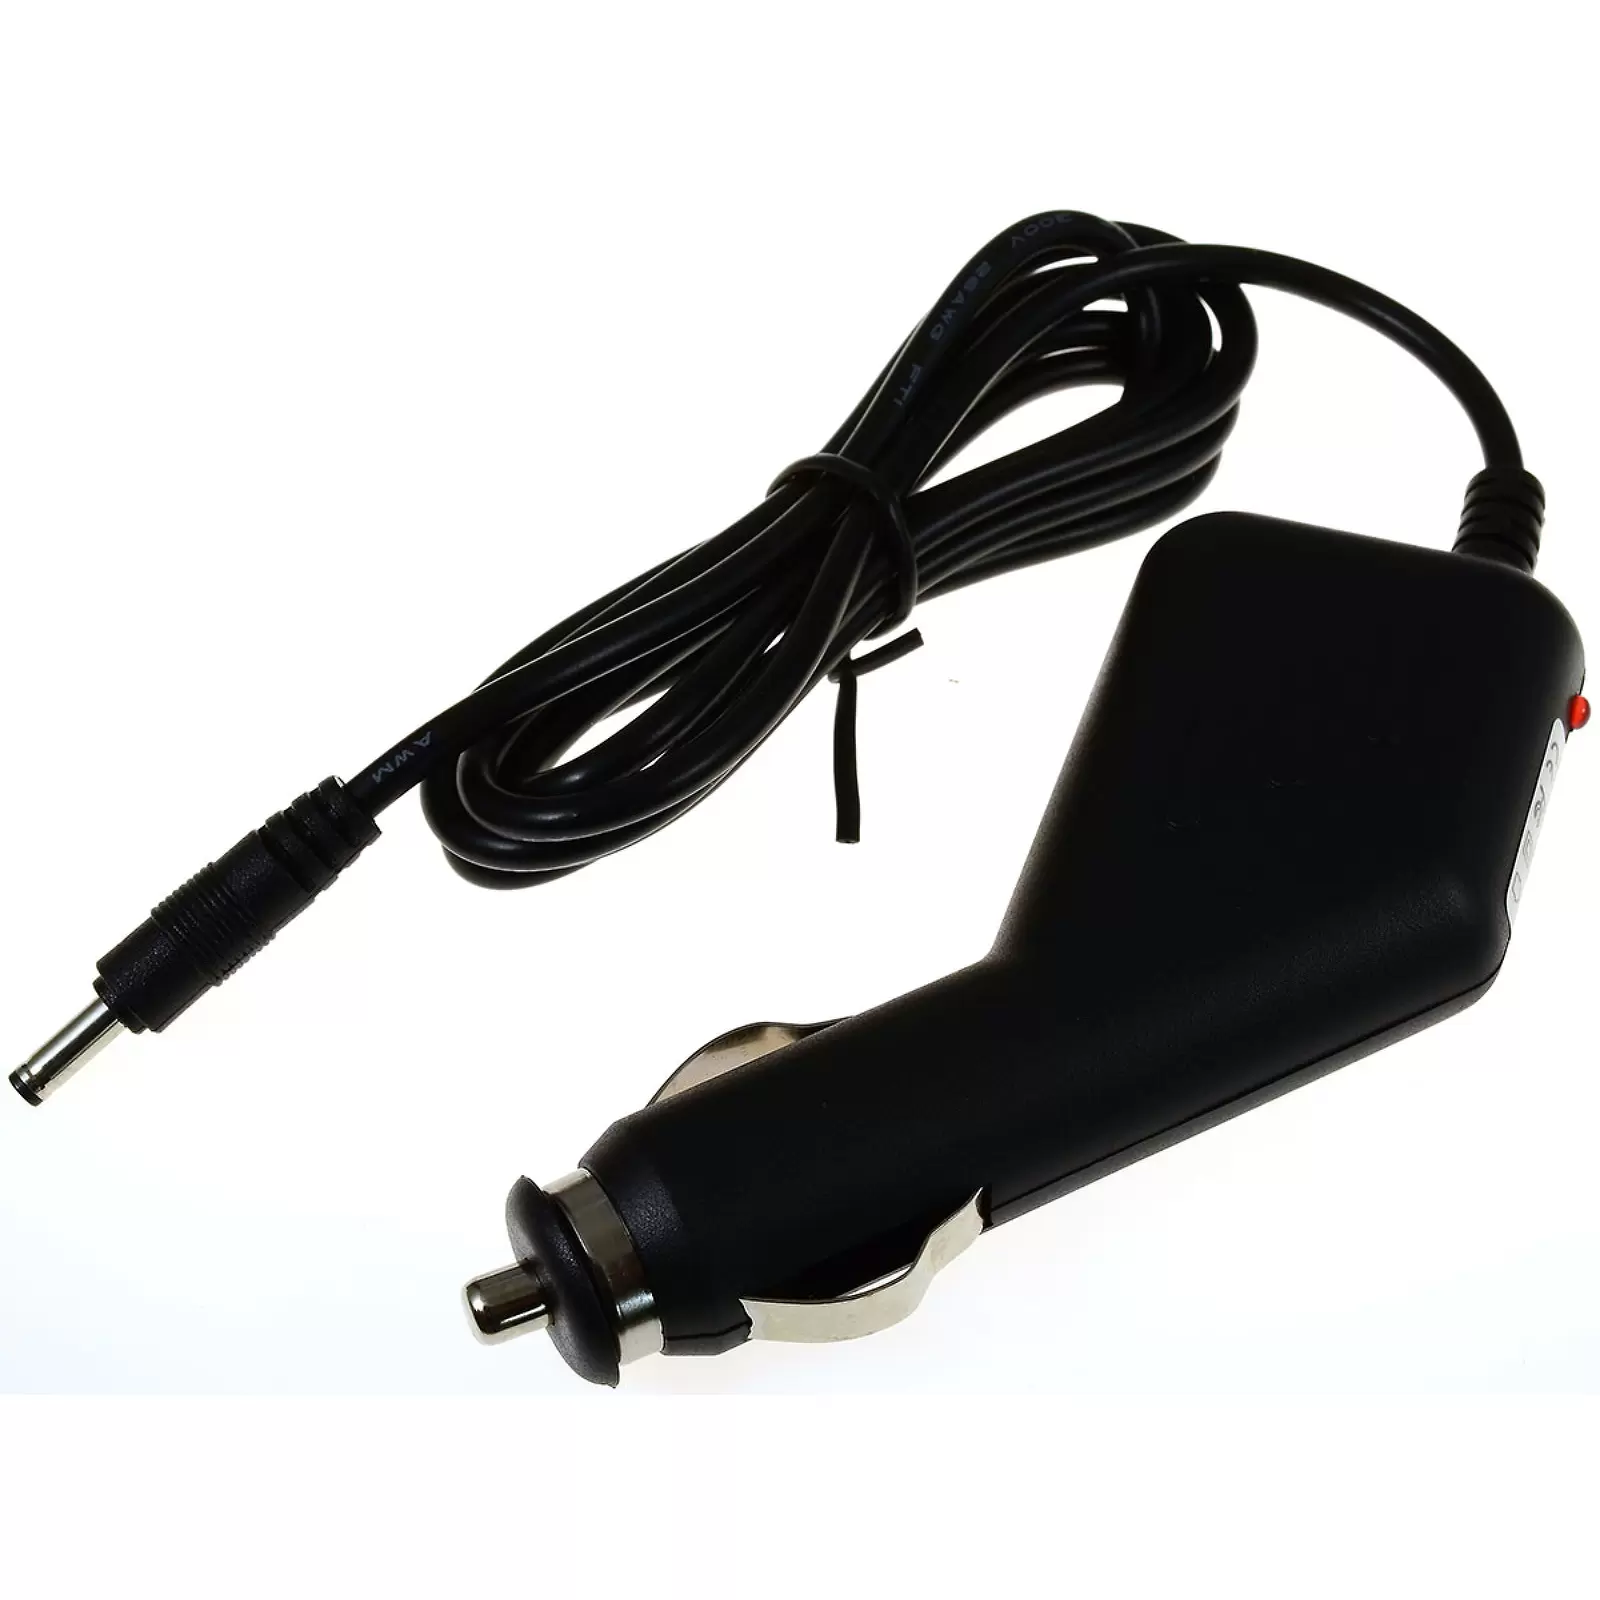 Kfz-USB-Ladekabel für Handy & Co. I